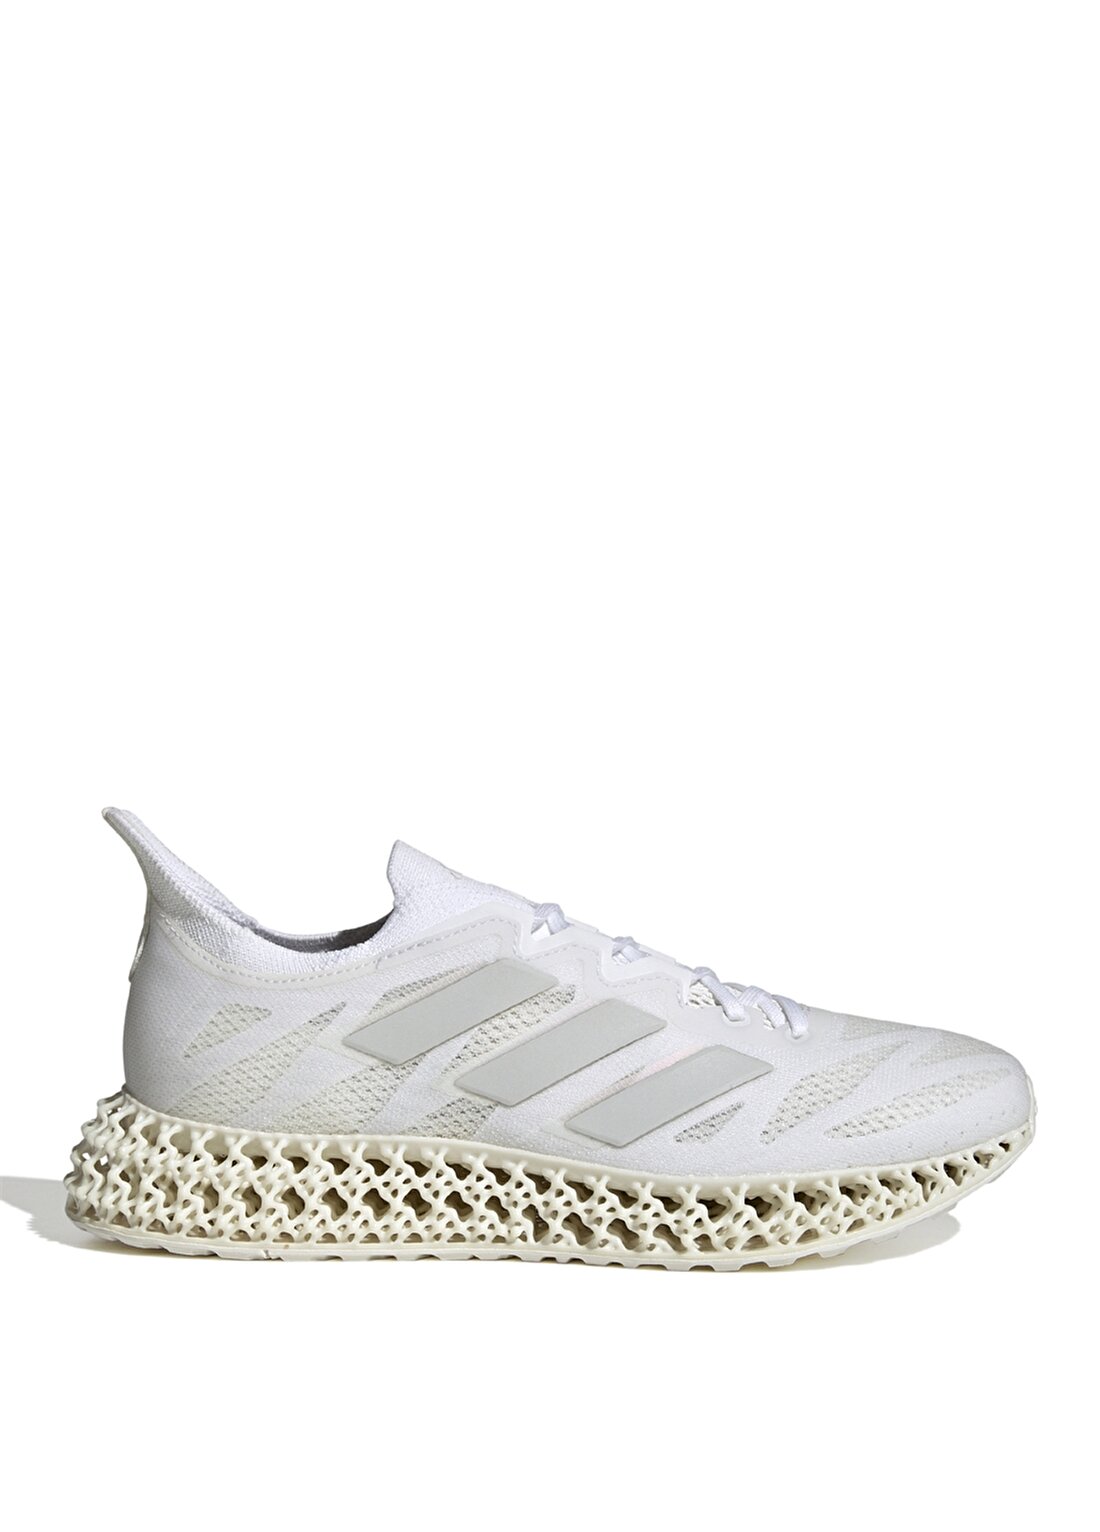 Adidas Beyaz Kadın Koşu Ayakkabısı IG8992 4DFWD